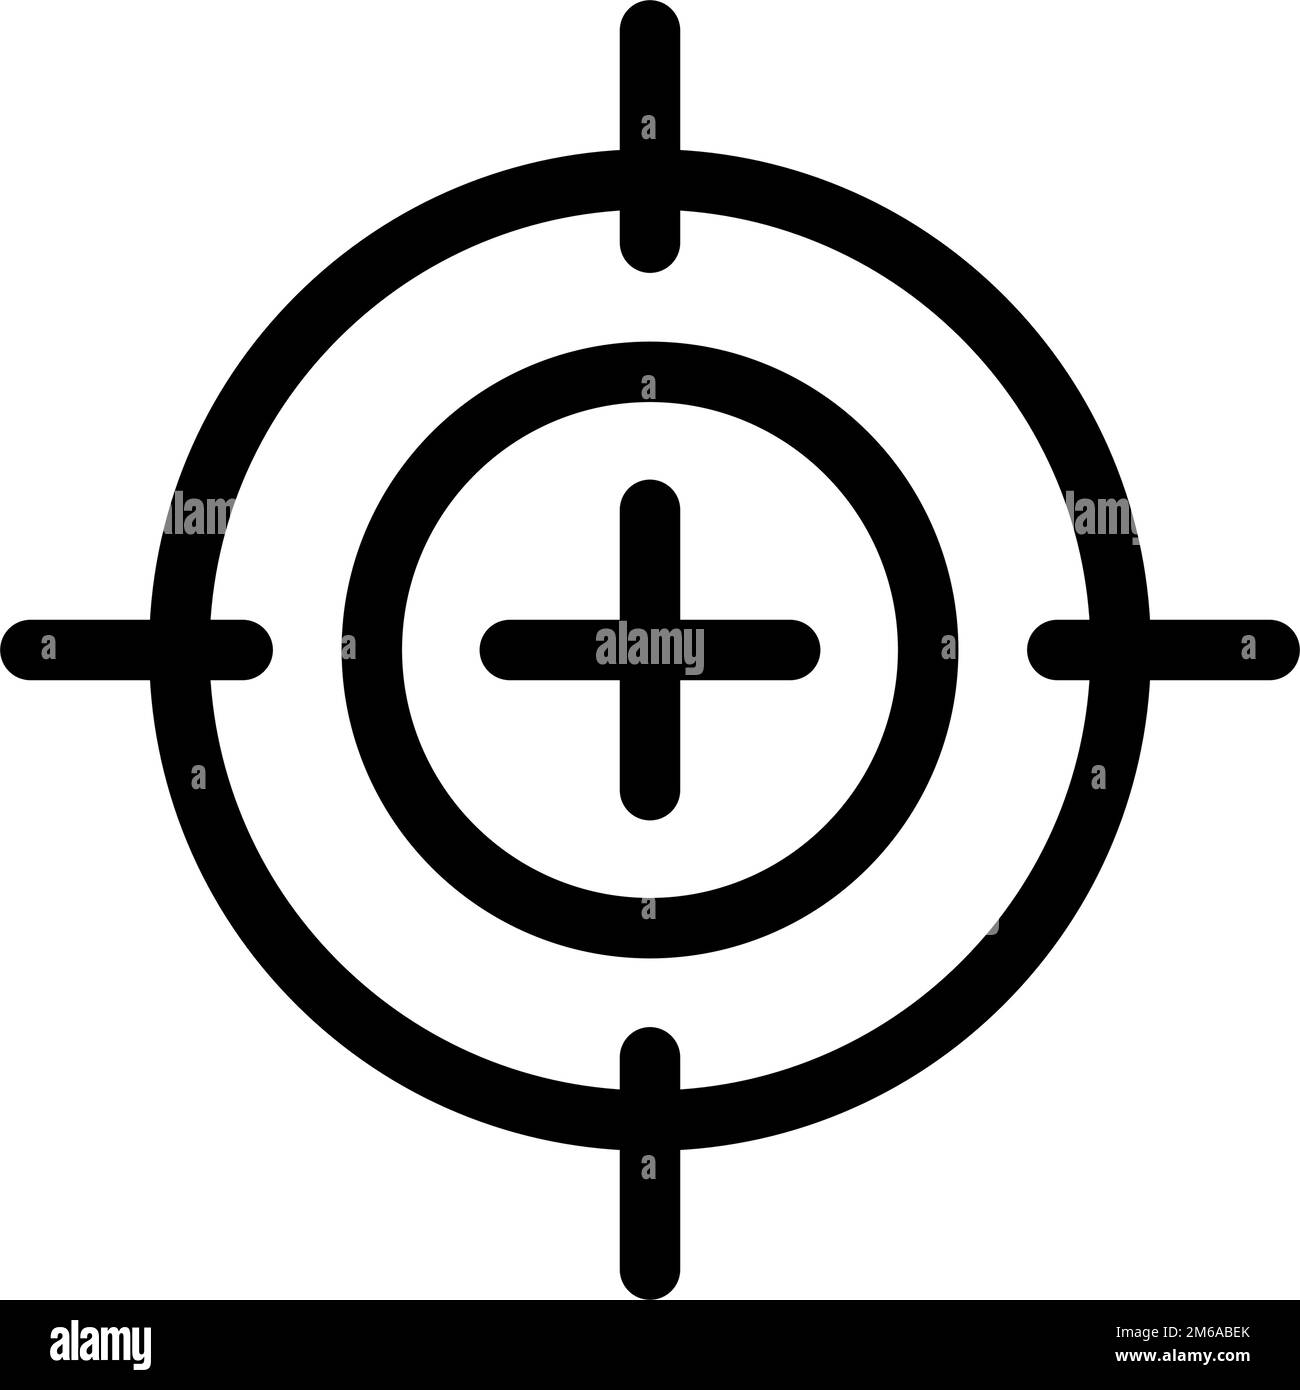 Gun sight silhouette icon. Aiming. Editable vector. Stock Vector